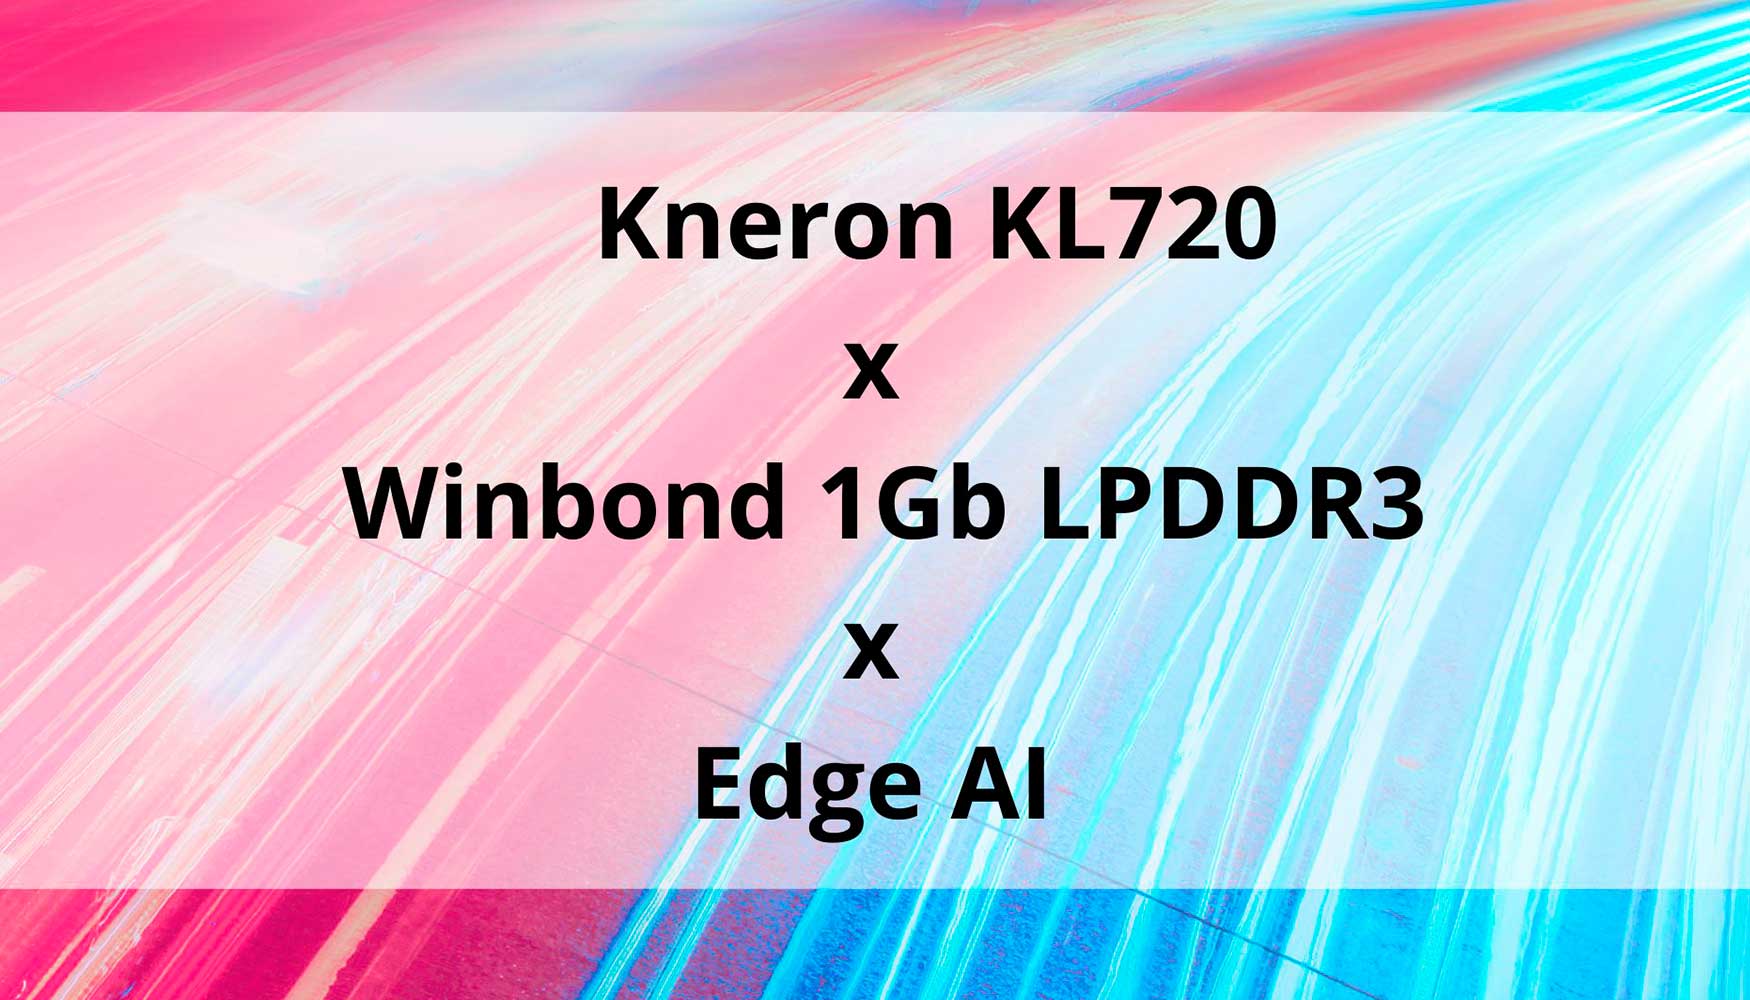 El chip Kneron KL720 incluye un troquel de 1Gb LPDDR3 DRAM de Winbond